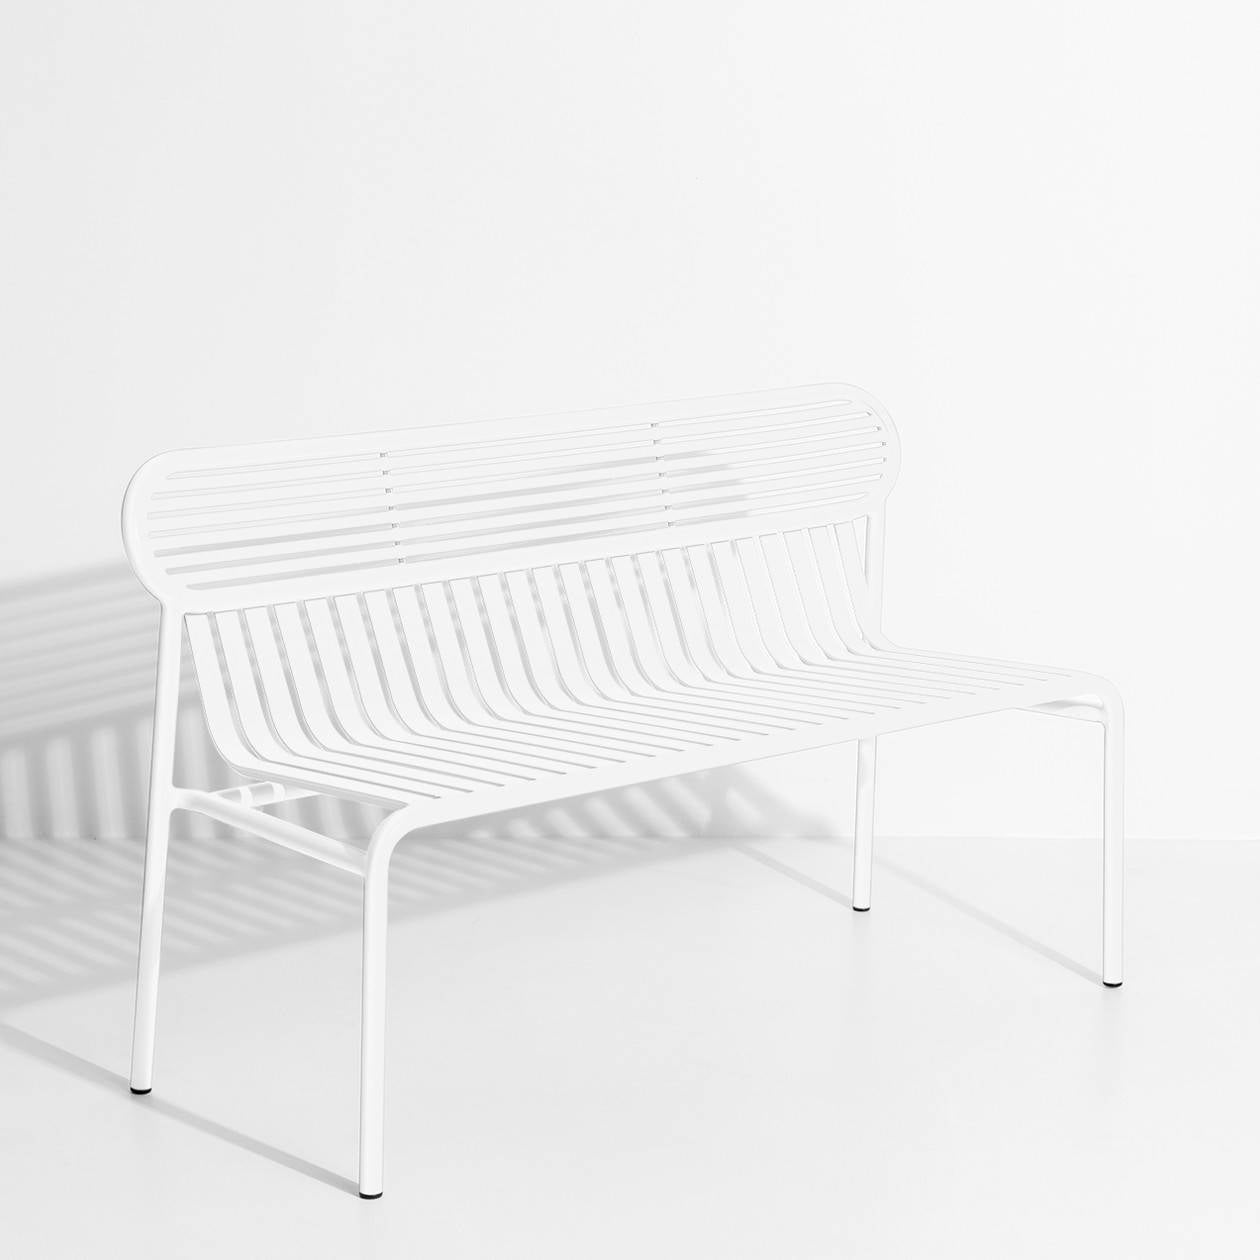 Week-End Gartenbank mit Armlehne in White präsentiert im Onlineshop von KAQTU Design AG. Gartenbank ist von Petite Friture